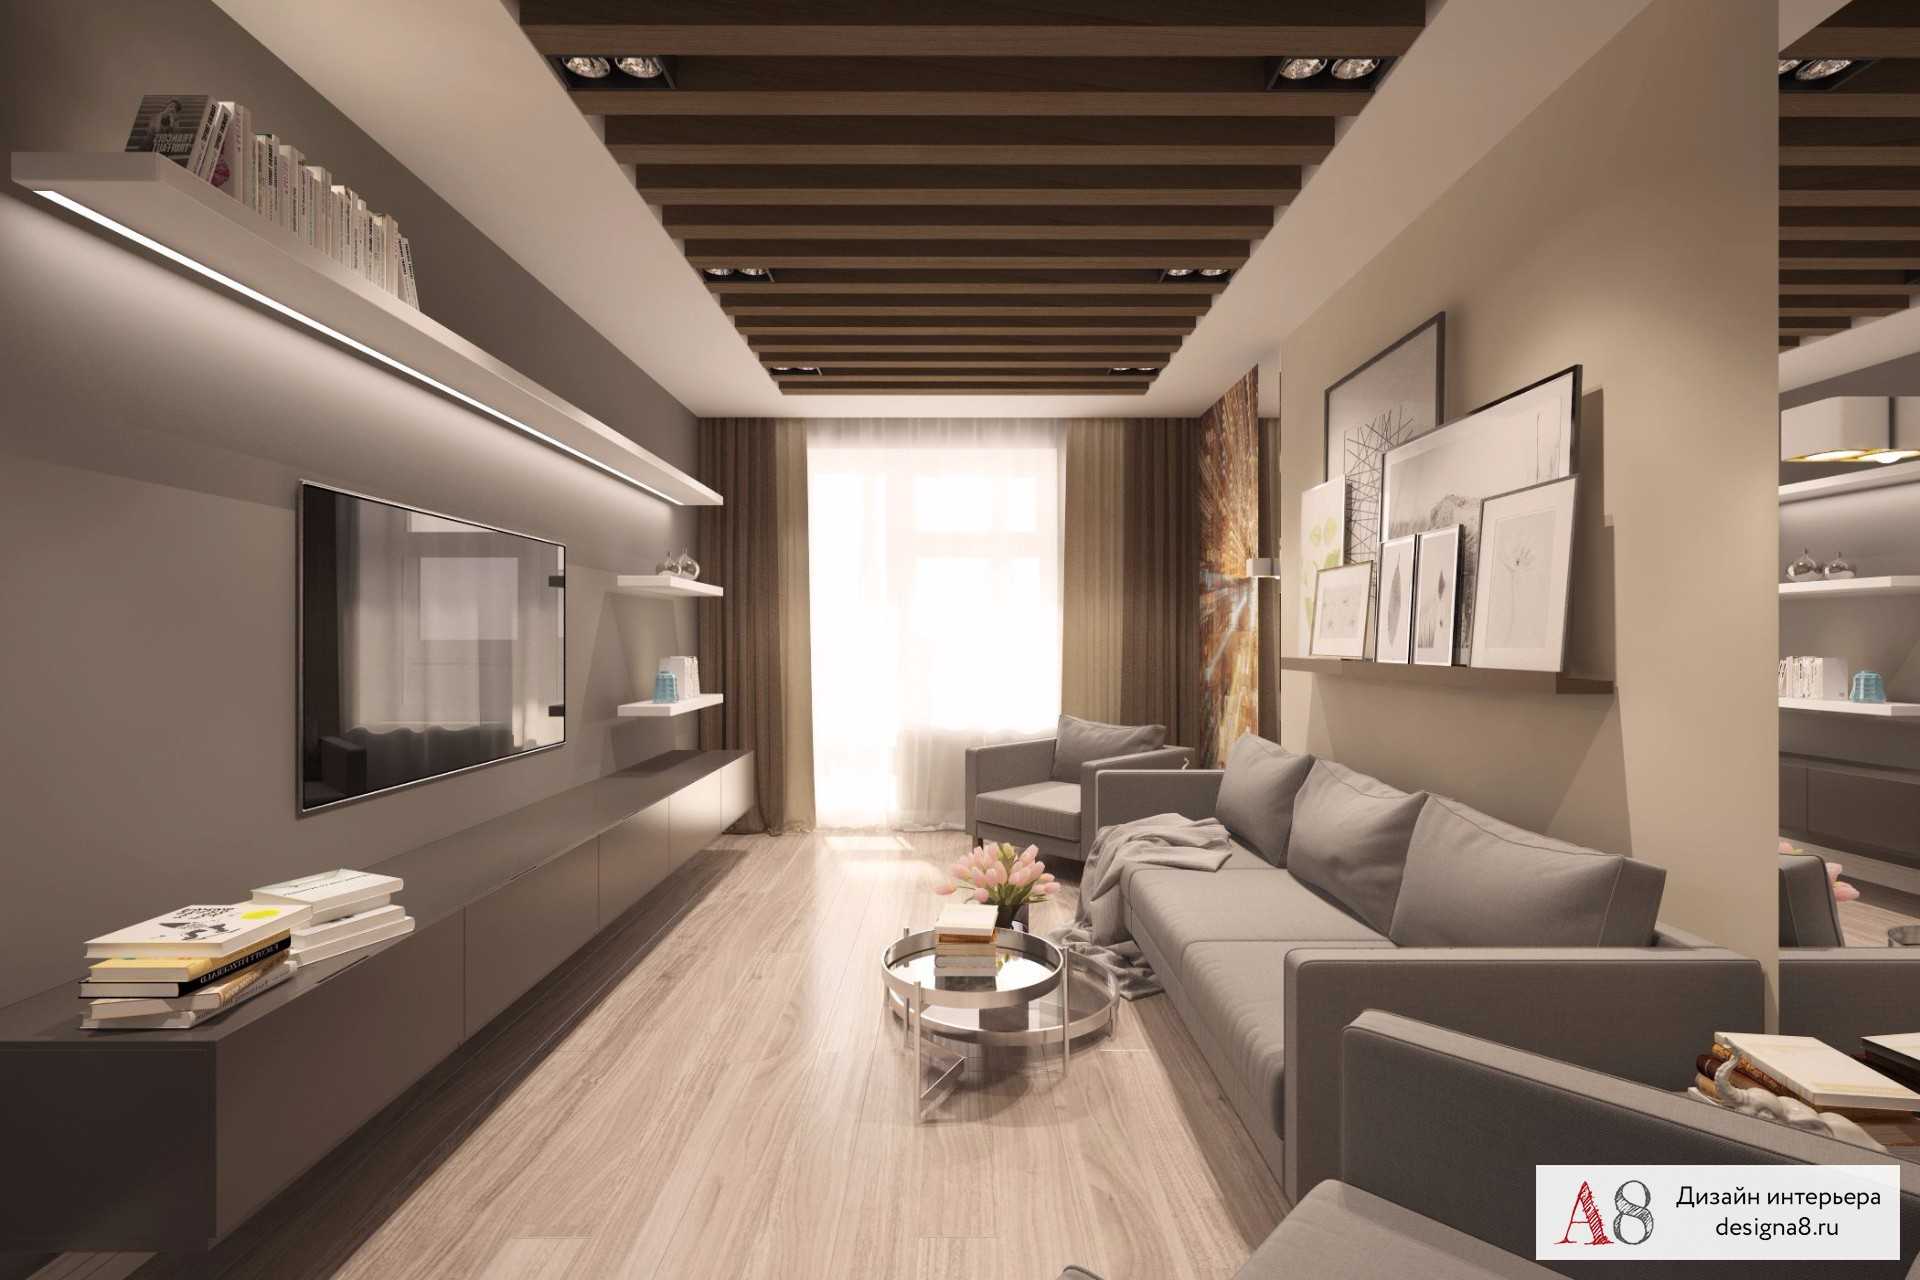 Дизайн 3-х комнатной квартиры: лучшие проекты трёхкомнатных квартир с дизайнерским ремонтом для панельных и кирпичных домов (135 фото)